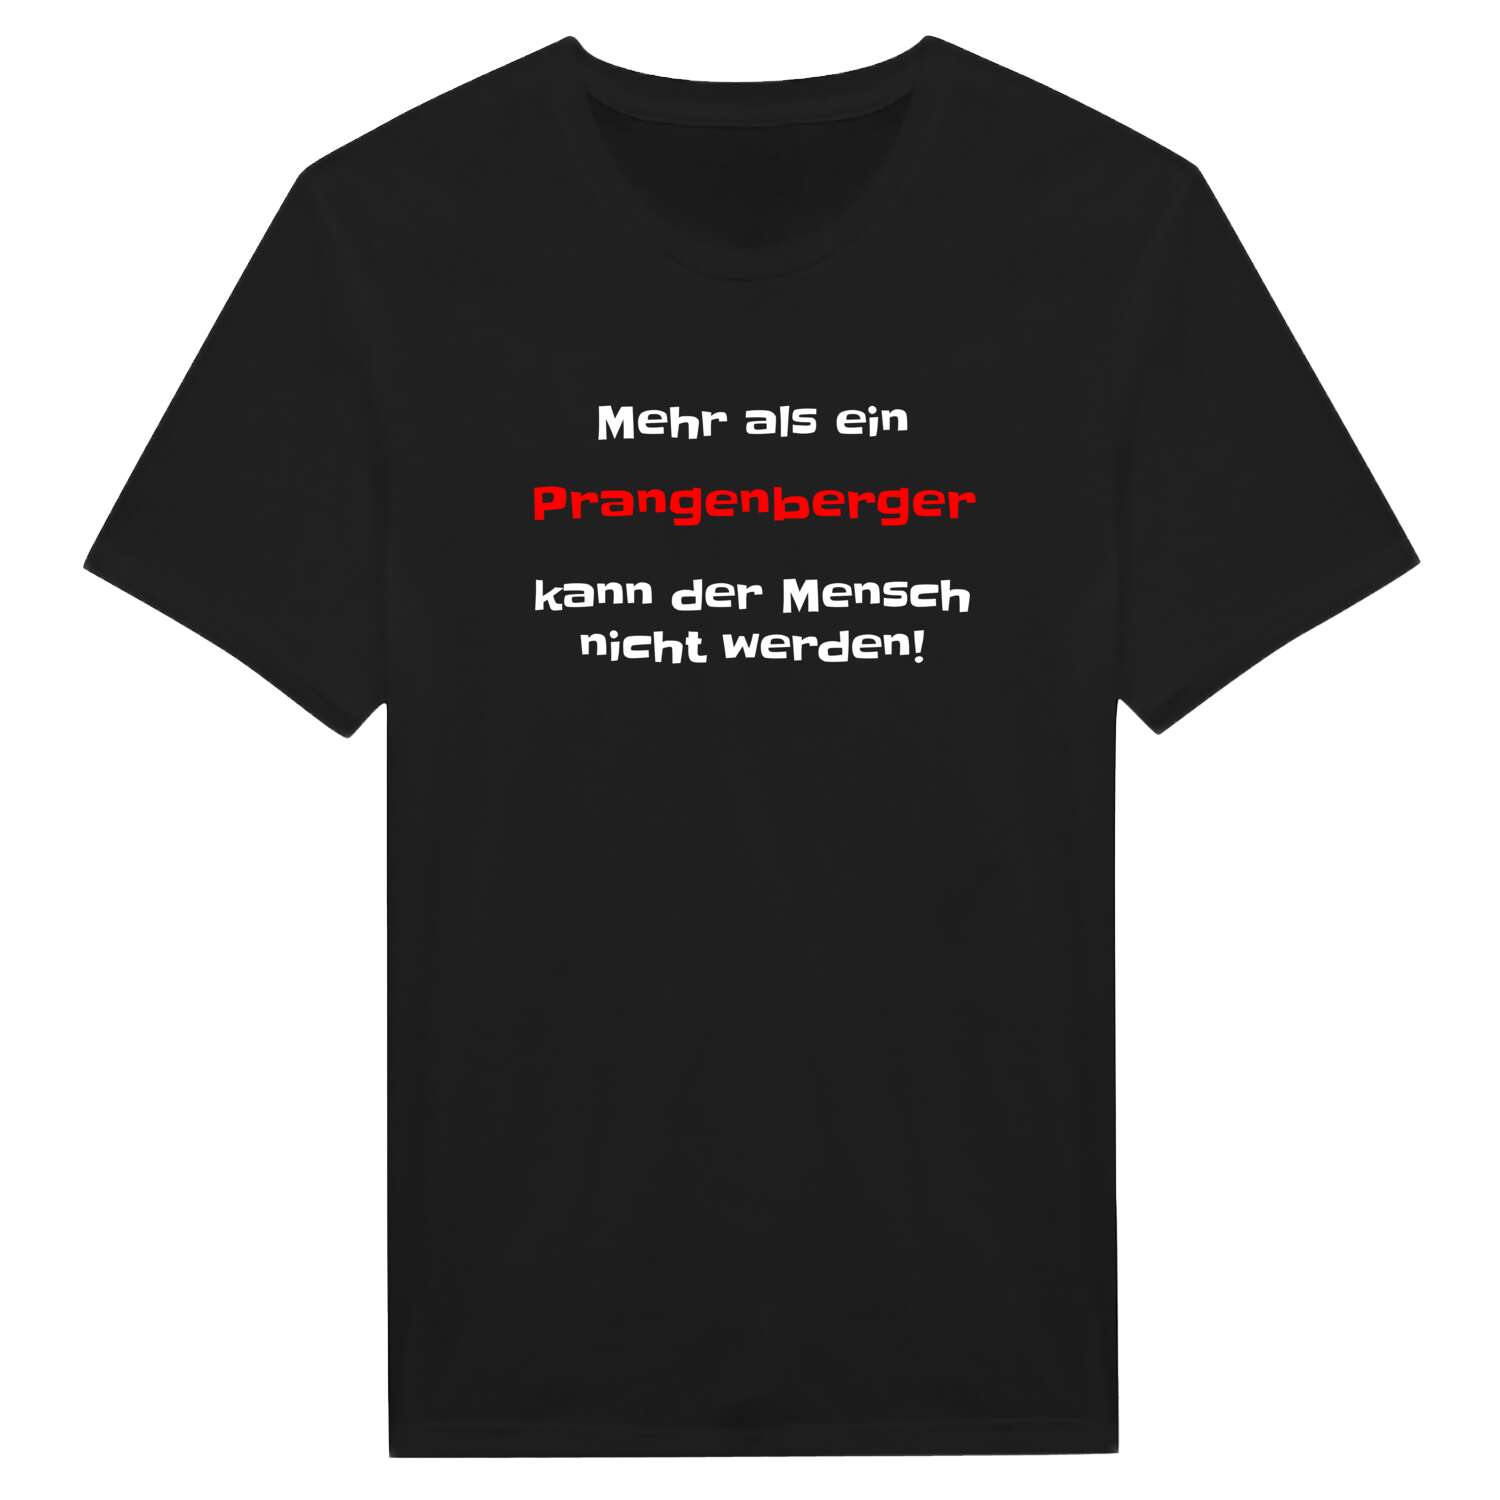 Prangenberg T-Shirt »Mehr als ein«